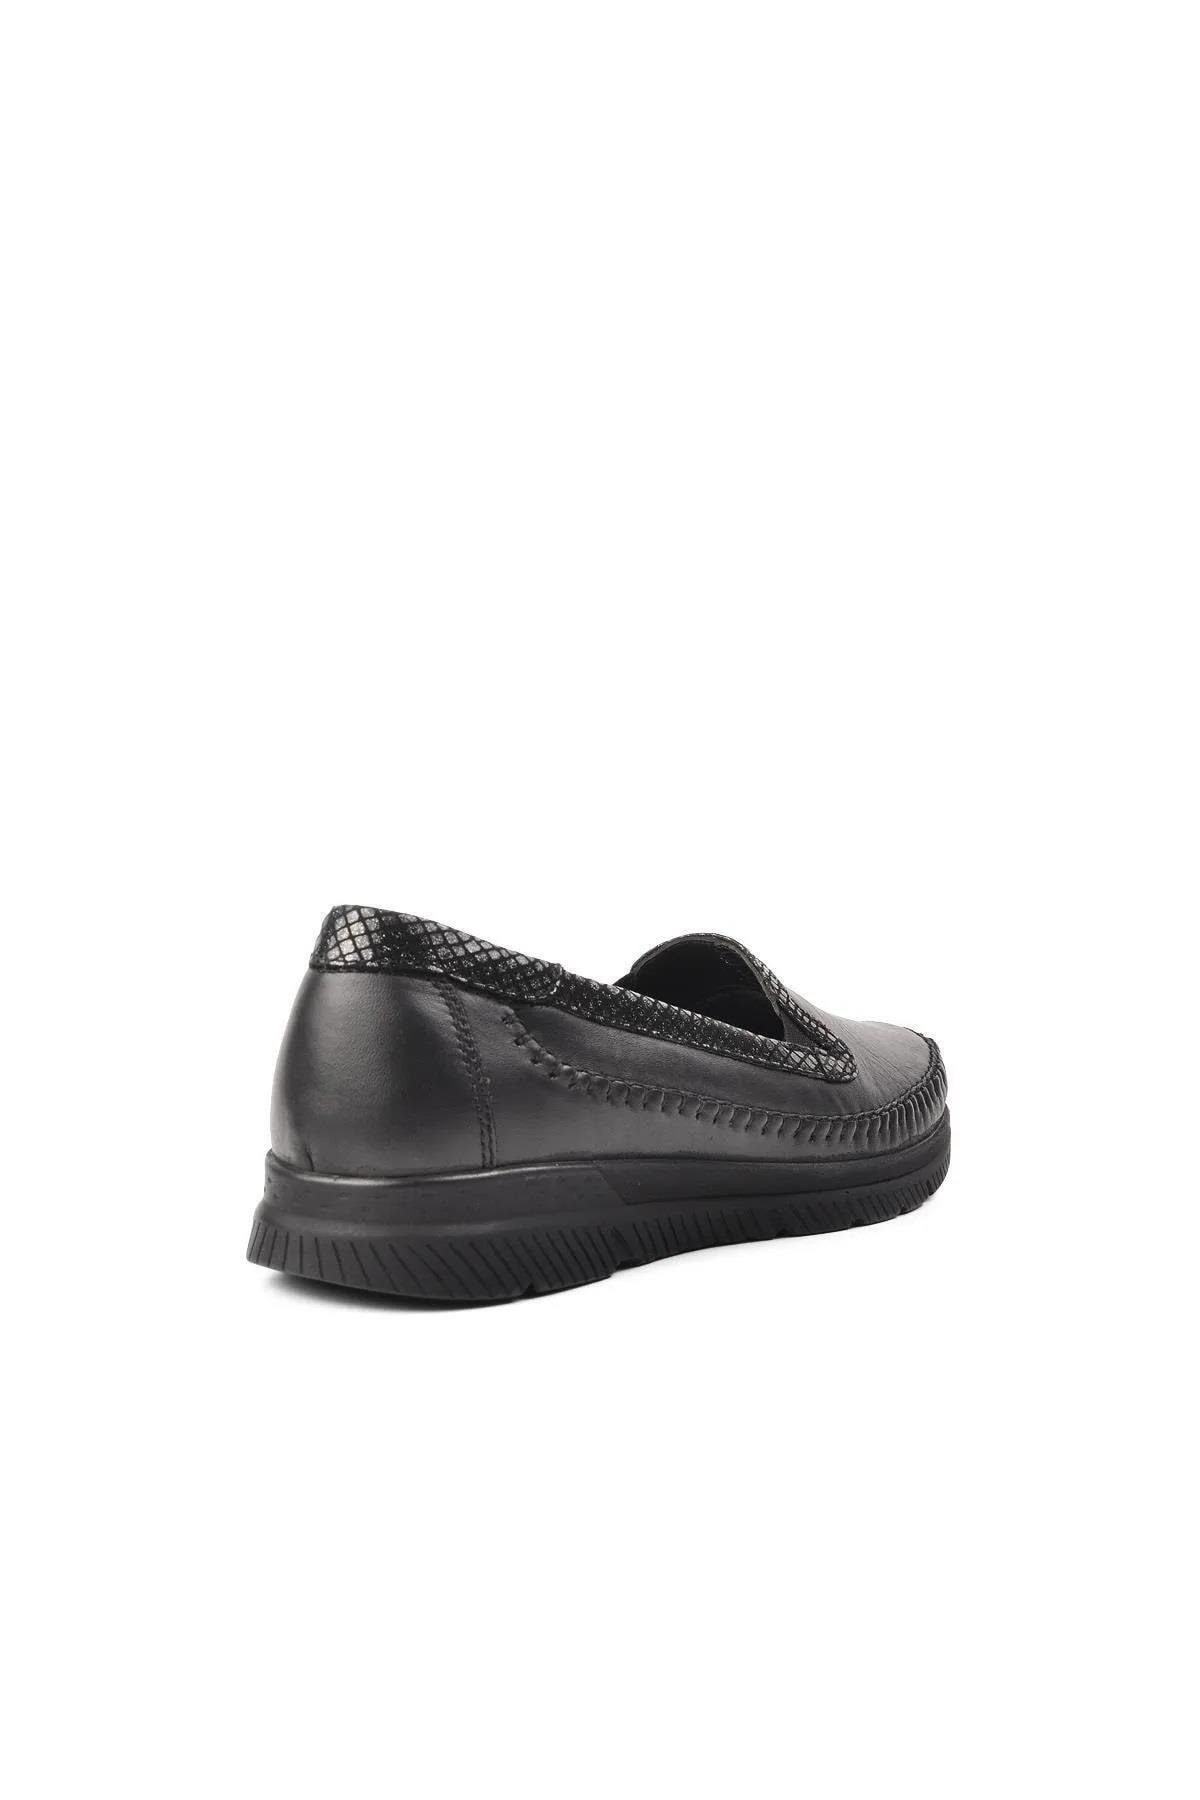 Forelli 29423 Comfort Kadın Ayakkabı Siyah | Lascada